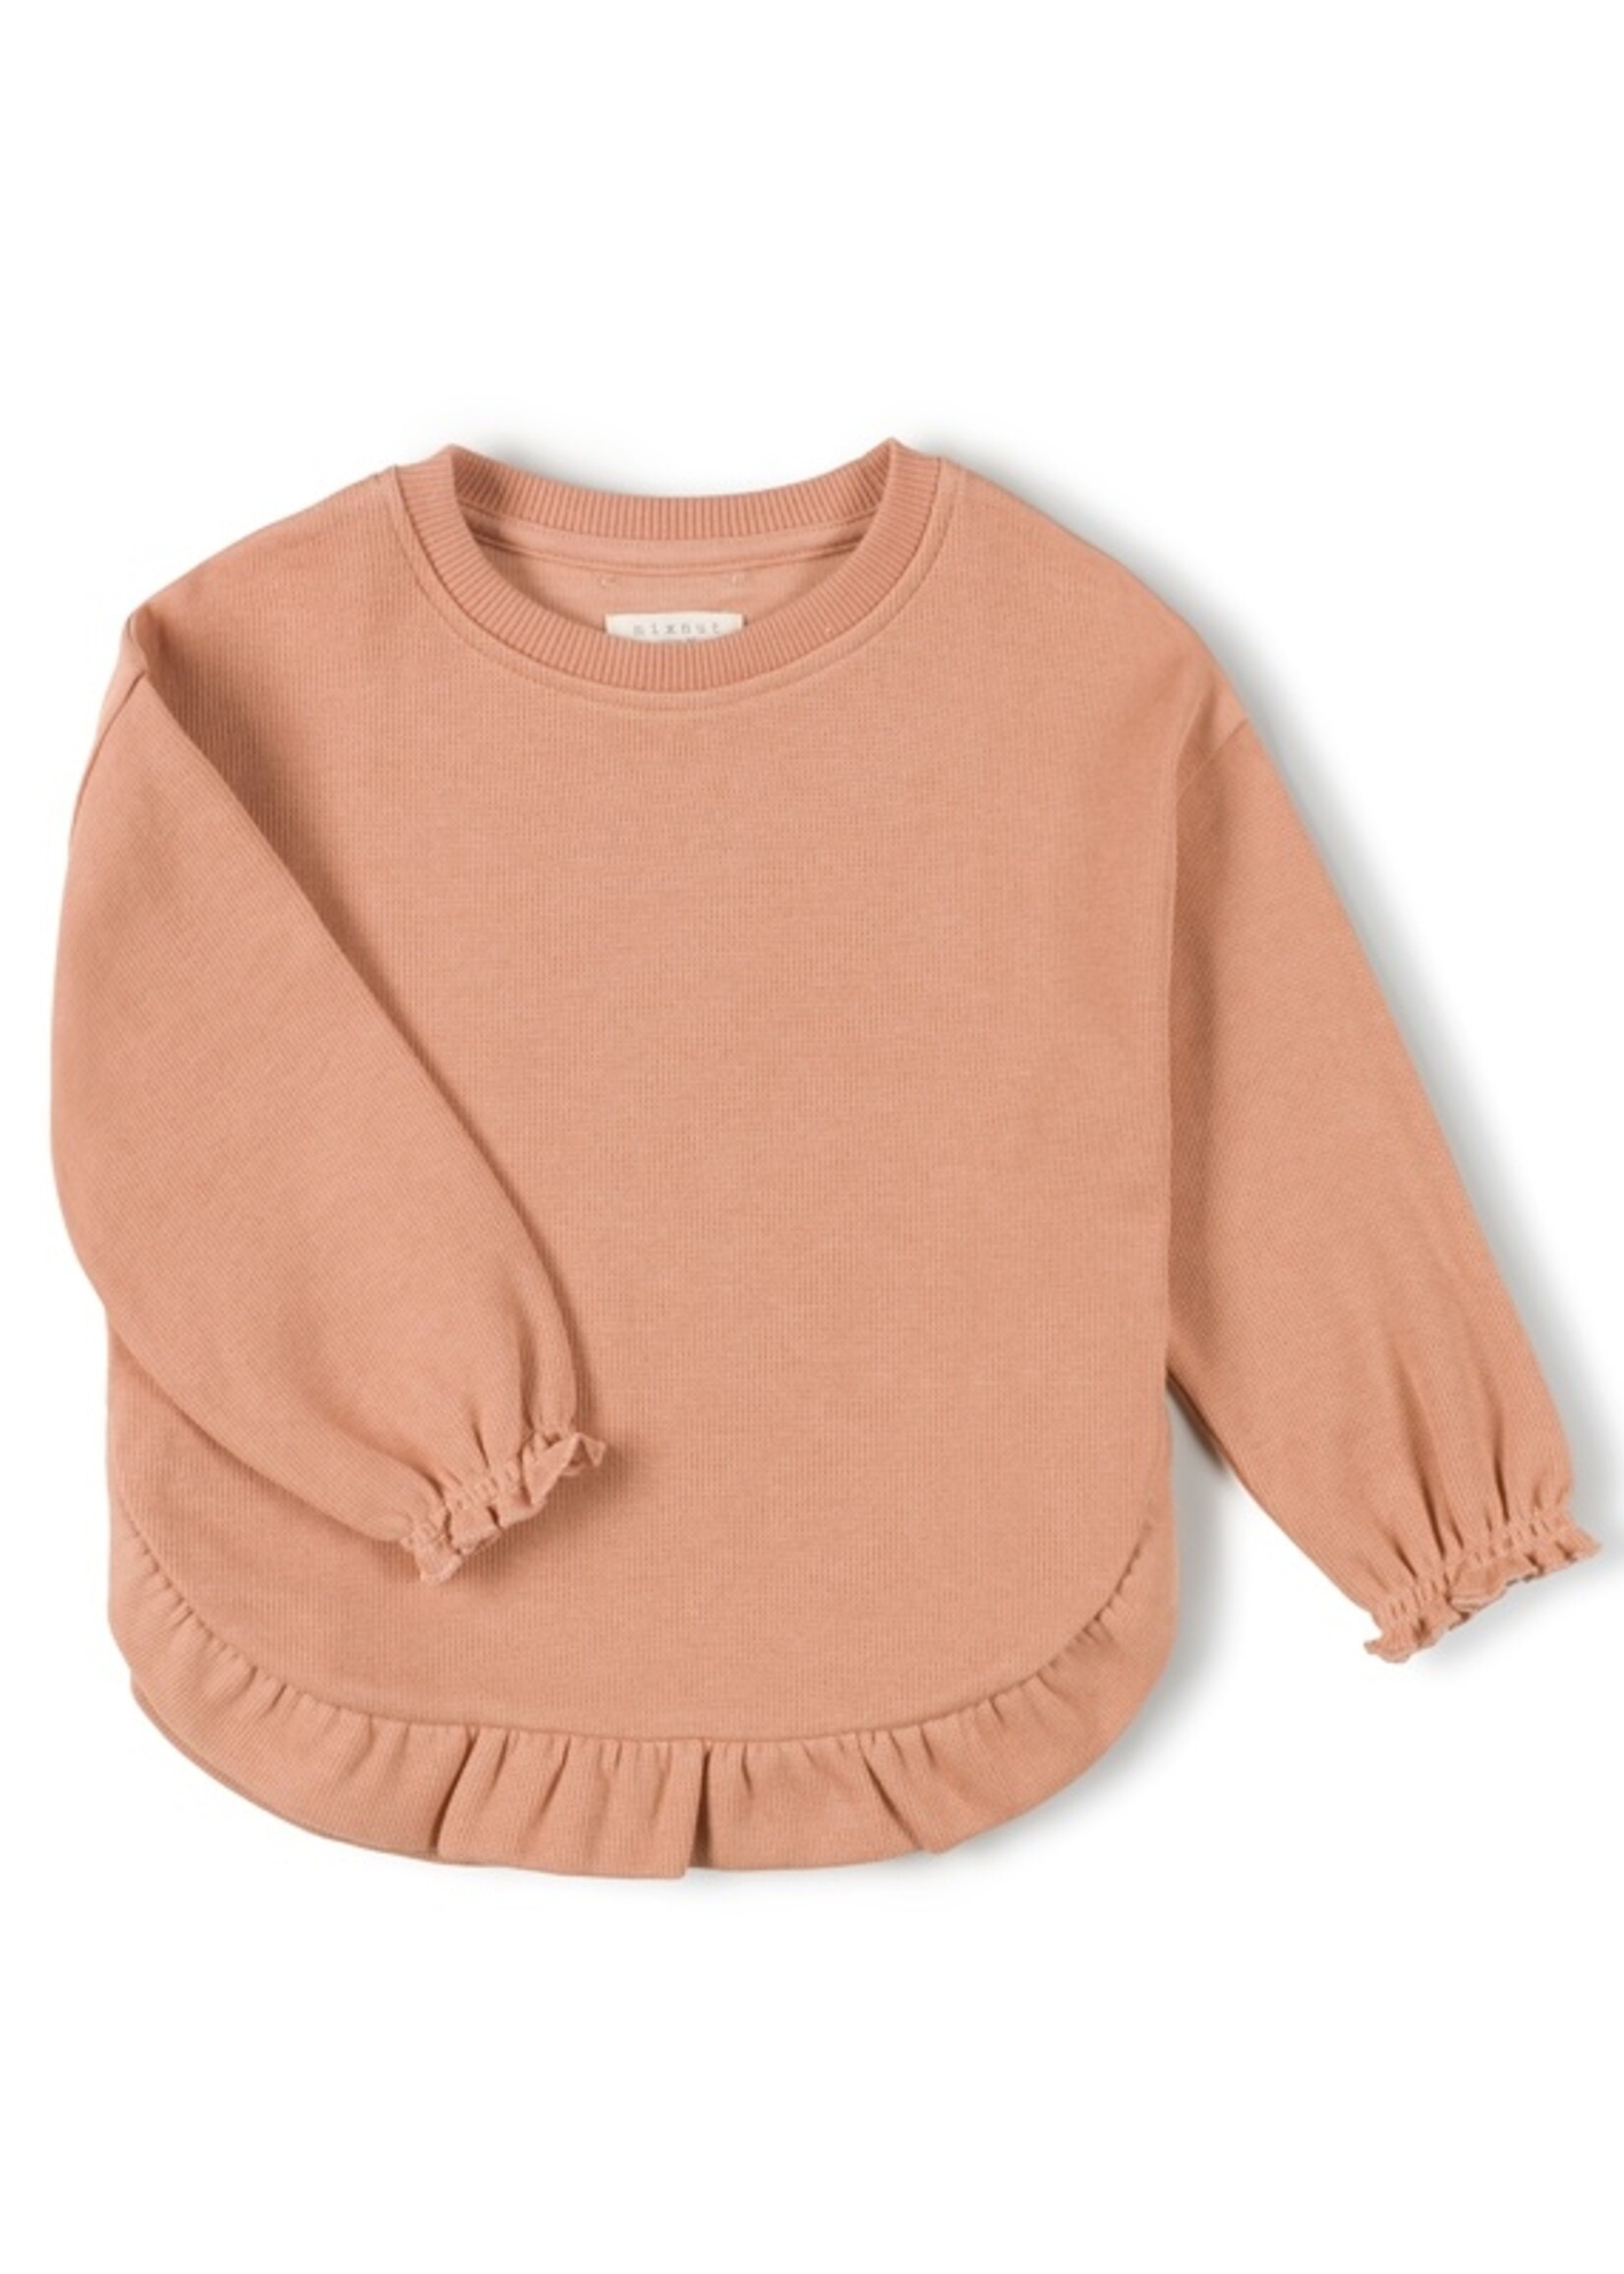 Nixnut Ruffled sweater peach - Nixnut